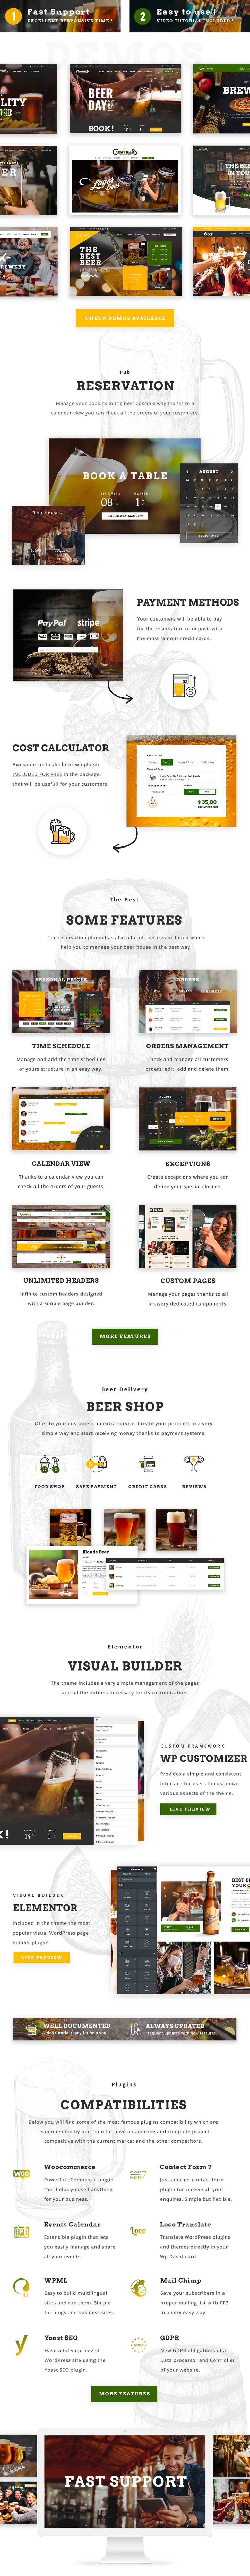 Puby Beer & Brewery WordPress Theme